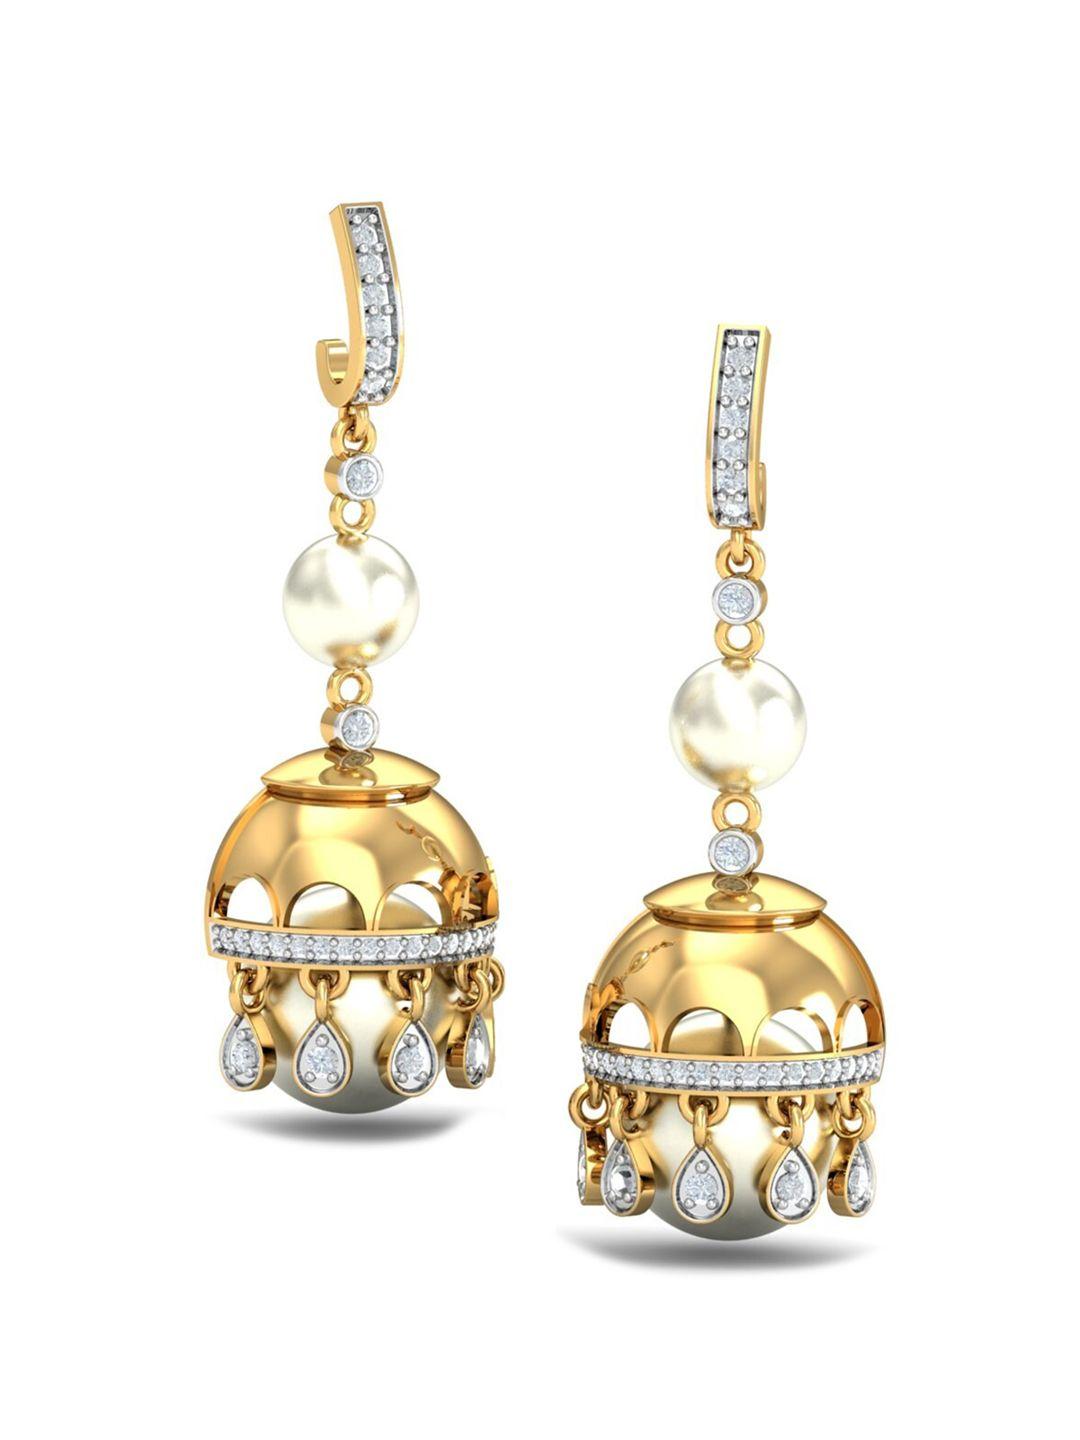 kuberbox aakriti 18kt gold diamond studded jhumka earrings-5.15 gm